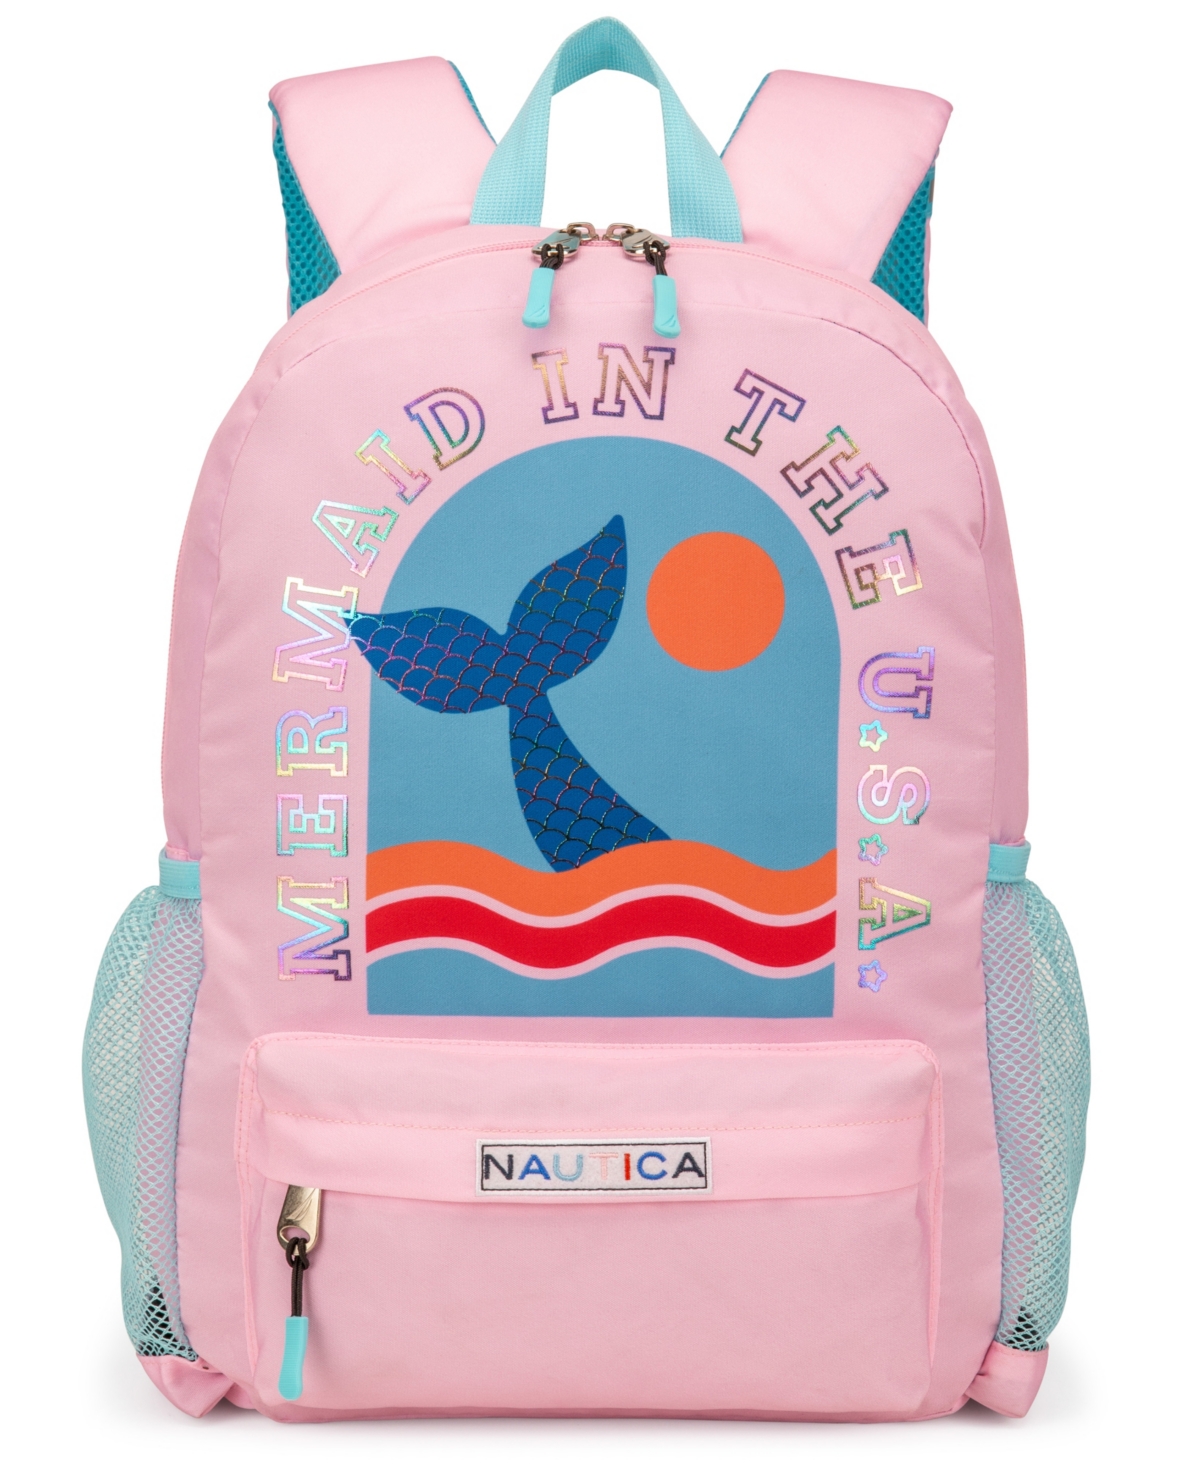 Nautica Kids Backpack For School, 16" H In Mermaid Tail